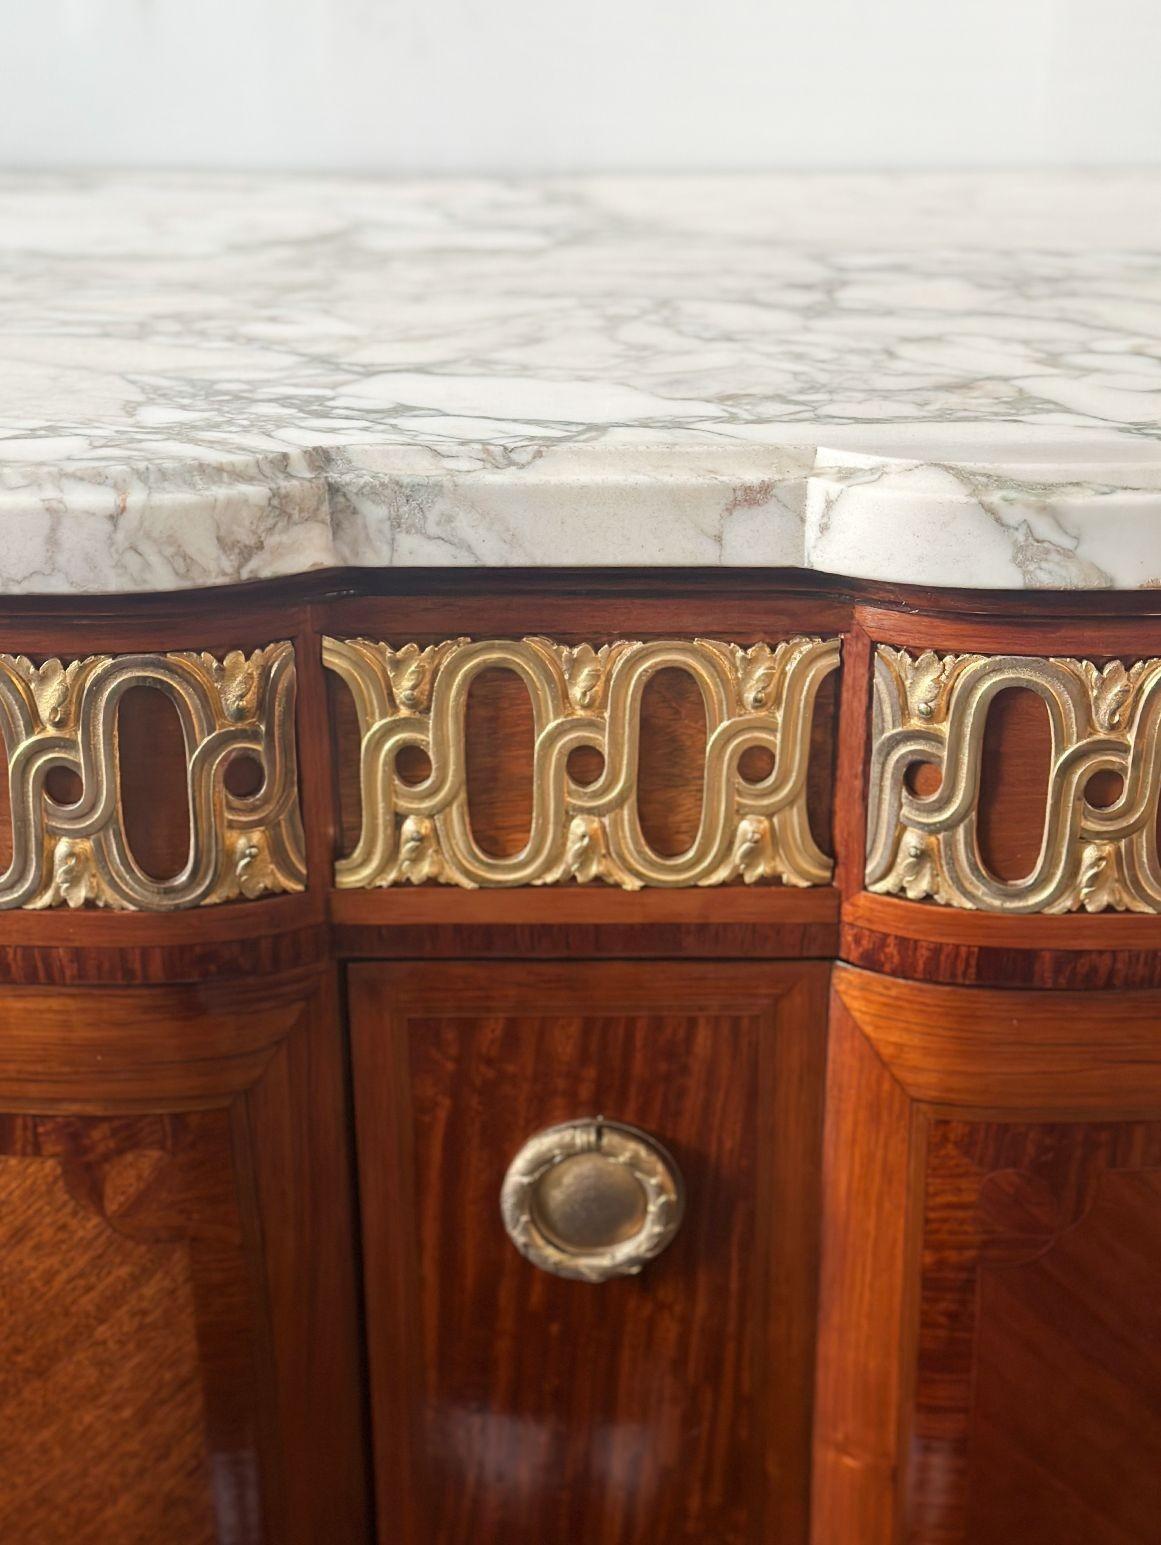 Eleganter französischer Schrank im Louis-XVI-Stil des späten 19. Jahrhunderts mit weißer Marmorplatte und bronzenen Beschlagdetails, die das Stück umgeben. Die Cabriole-Beine sind fein mit Bronzebeschlägen verziert, und die floralen Intarsien auf